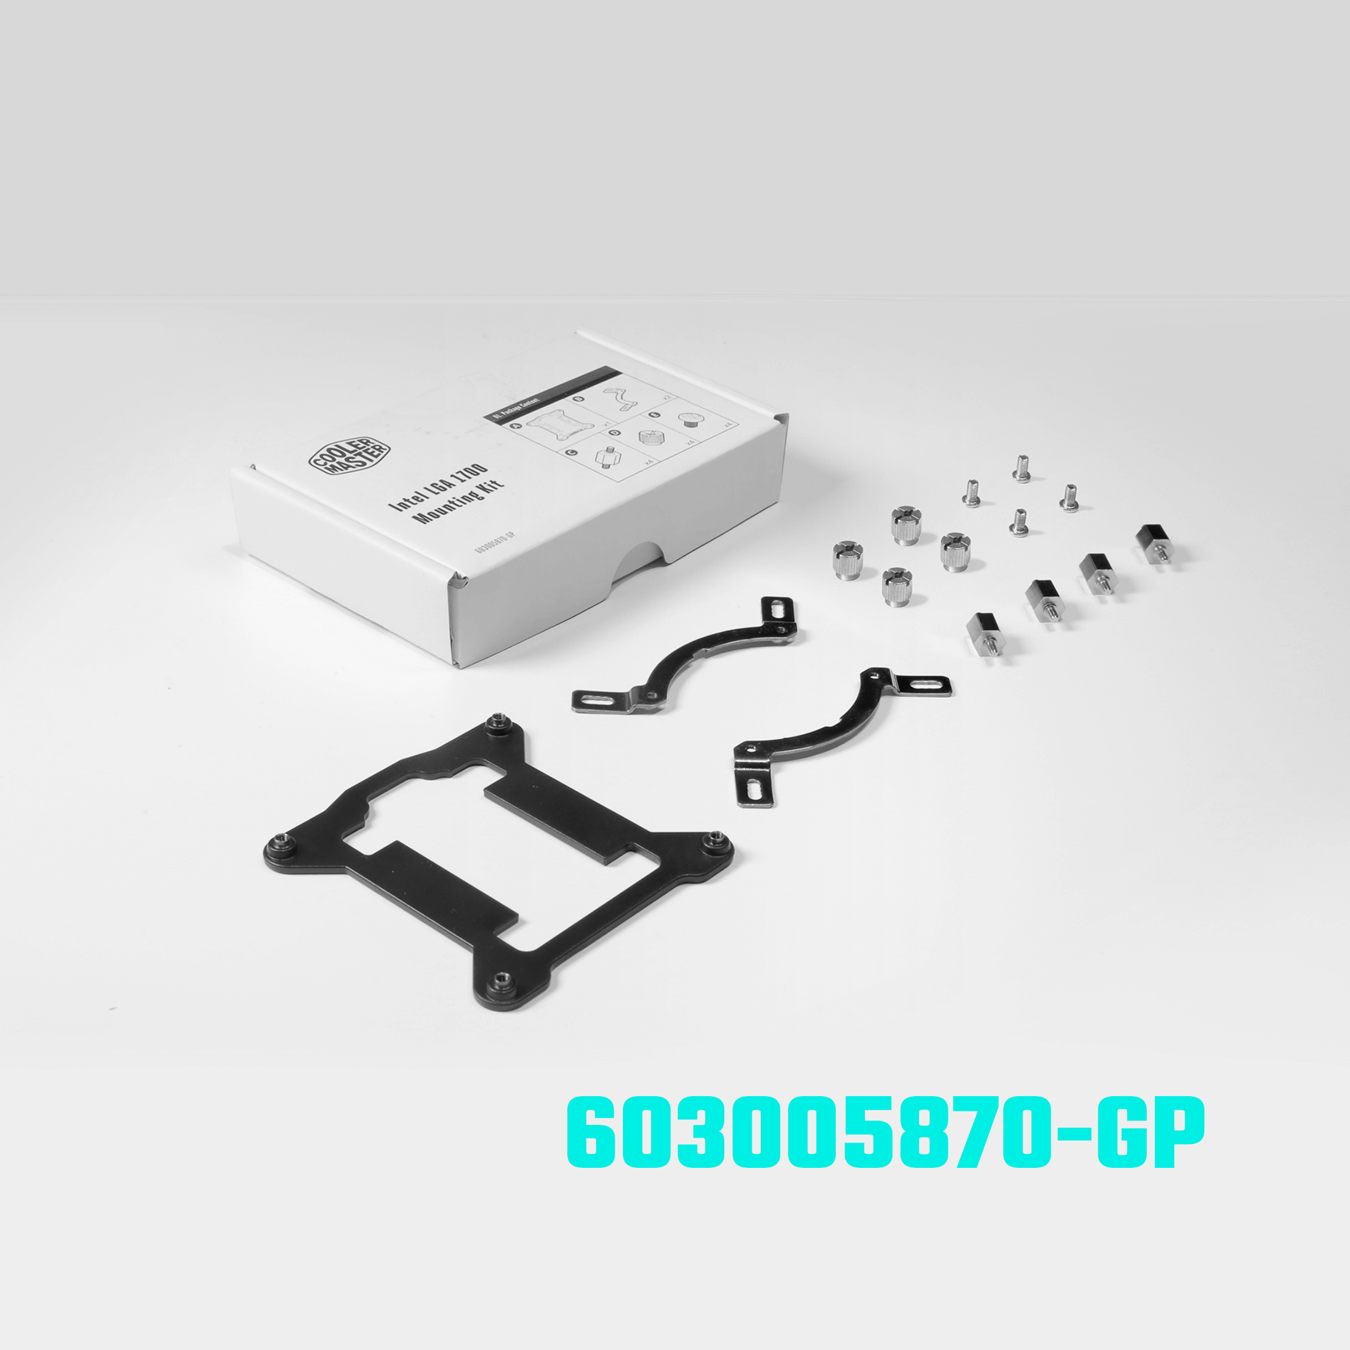 Kit de actualización LGA 1700 para la serie MasterLiquid - 603005870-GP